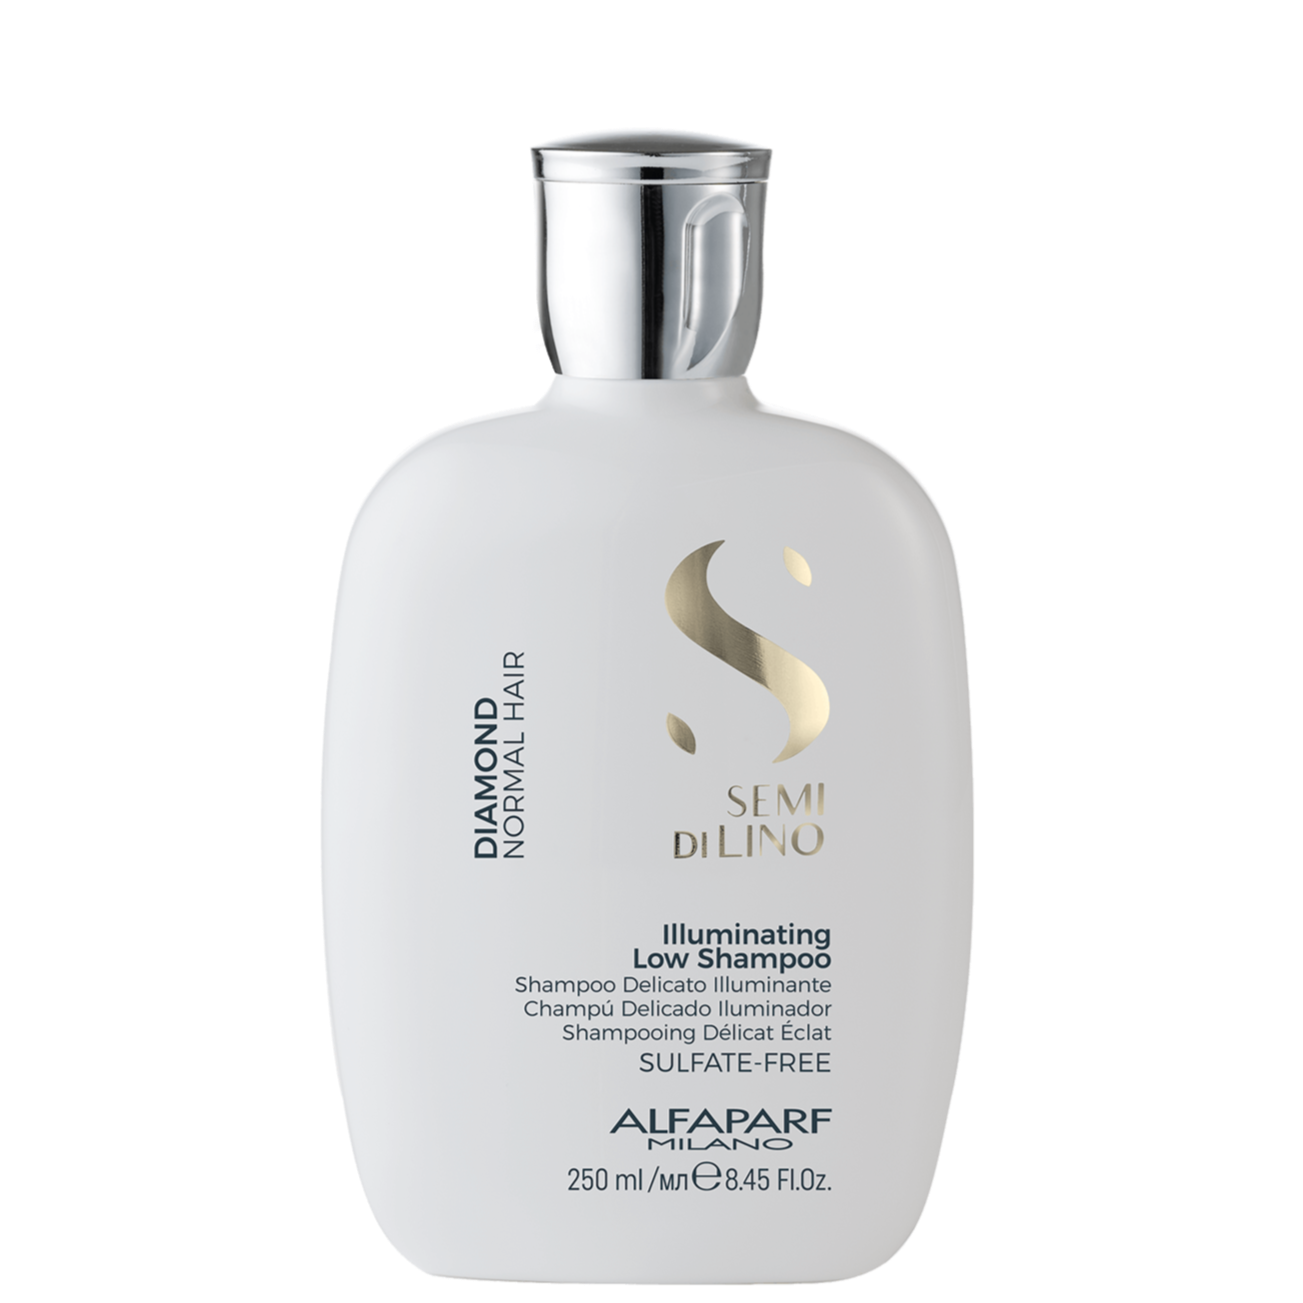 Semi Di Lino: Illuminating Low Shampoo (For Shiny Hair)